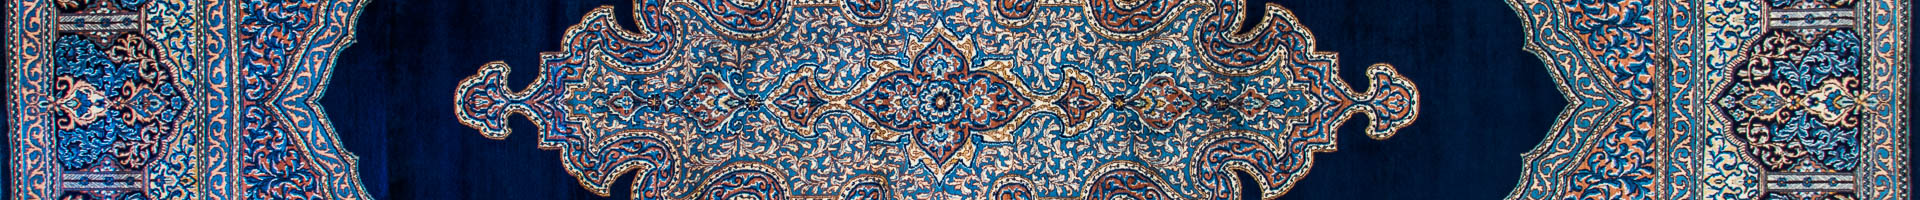 Kirman Persian Carpet Rug N1Carpet Montreal Canada Tapis Persan